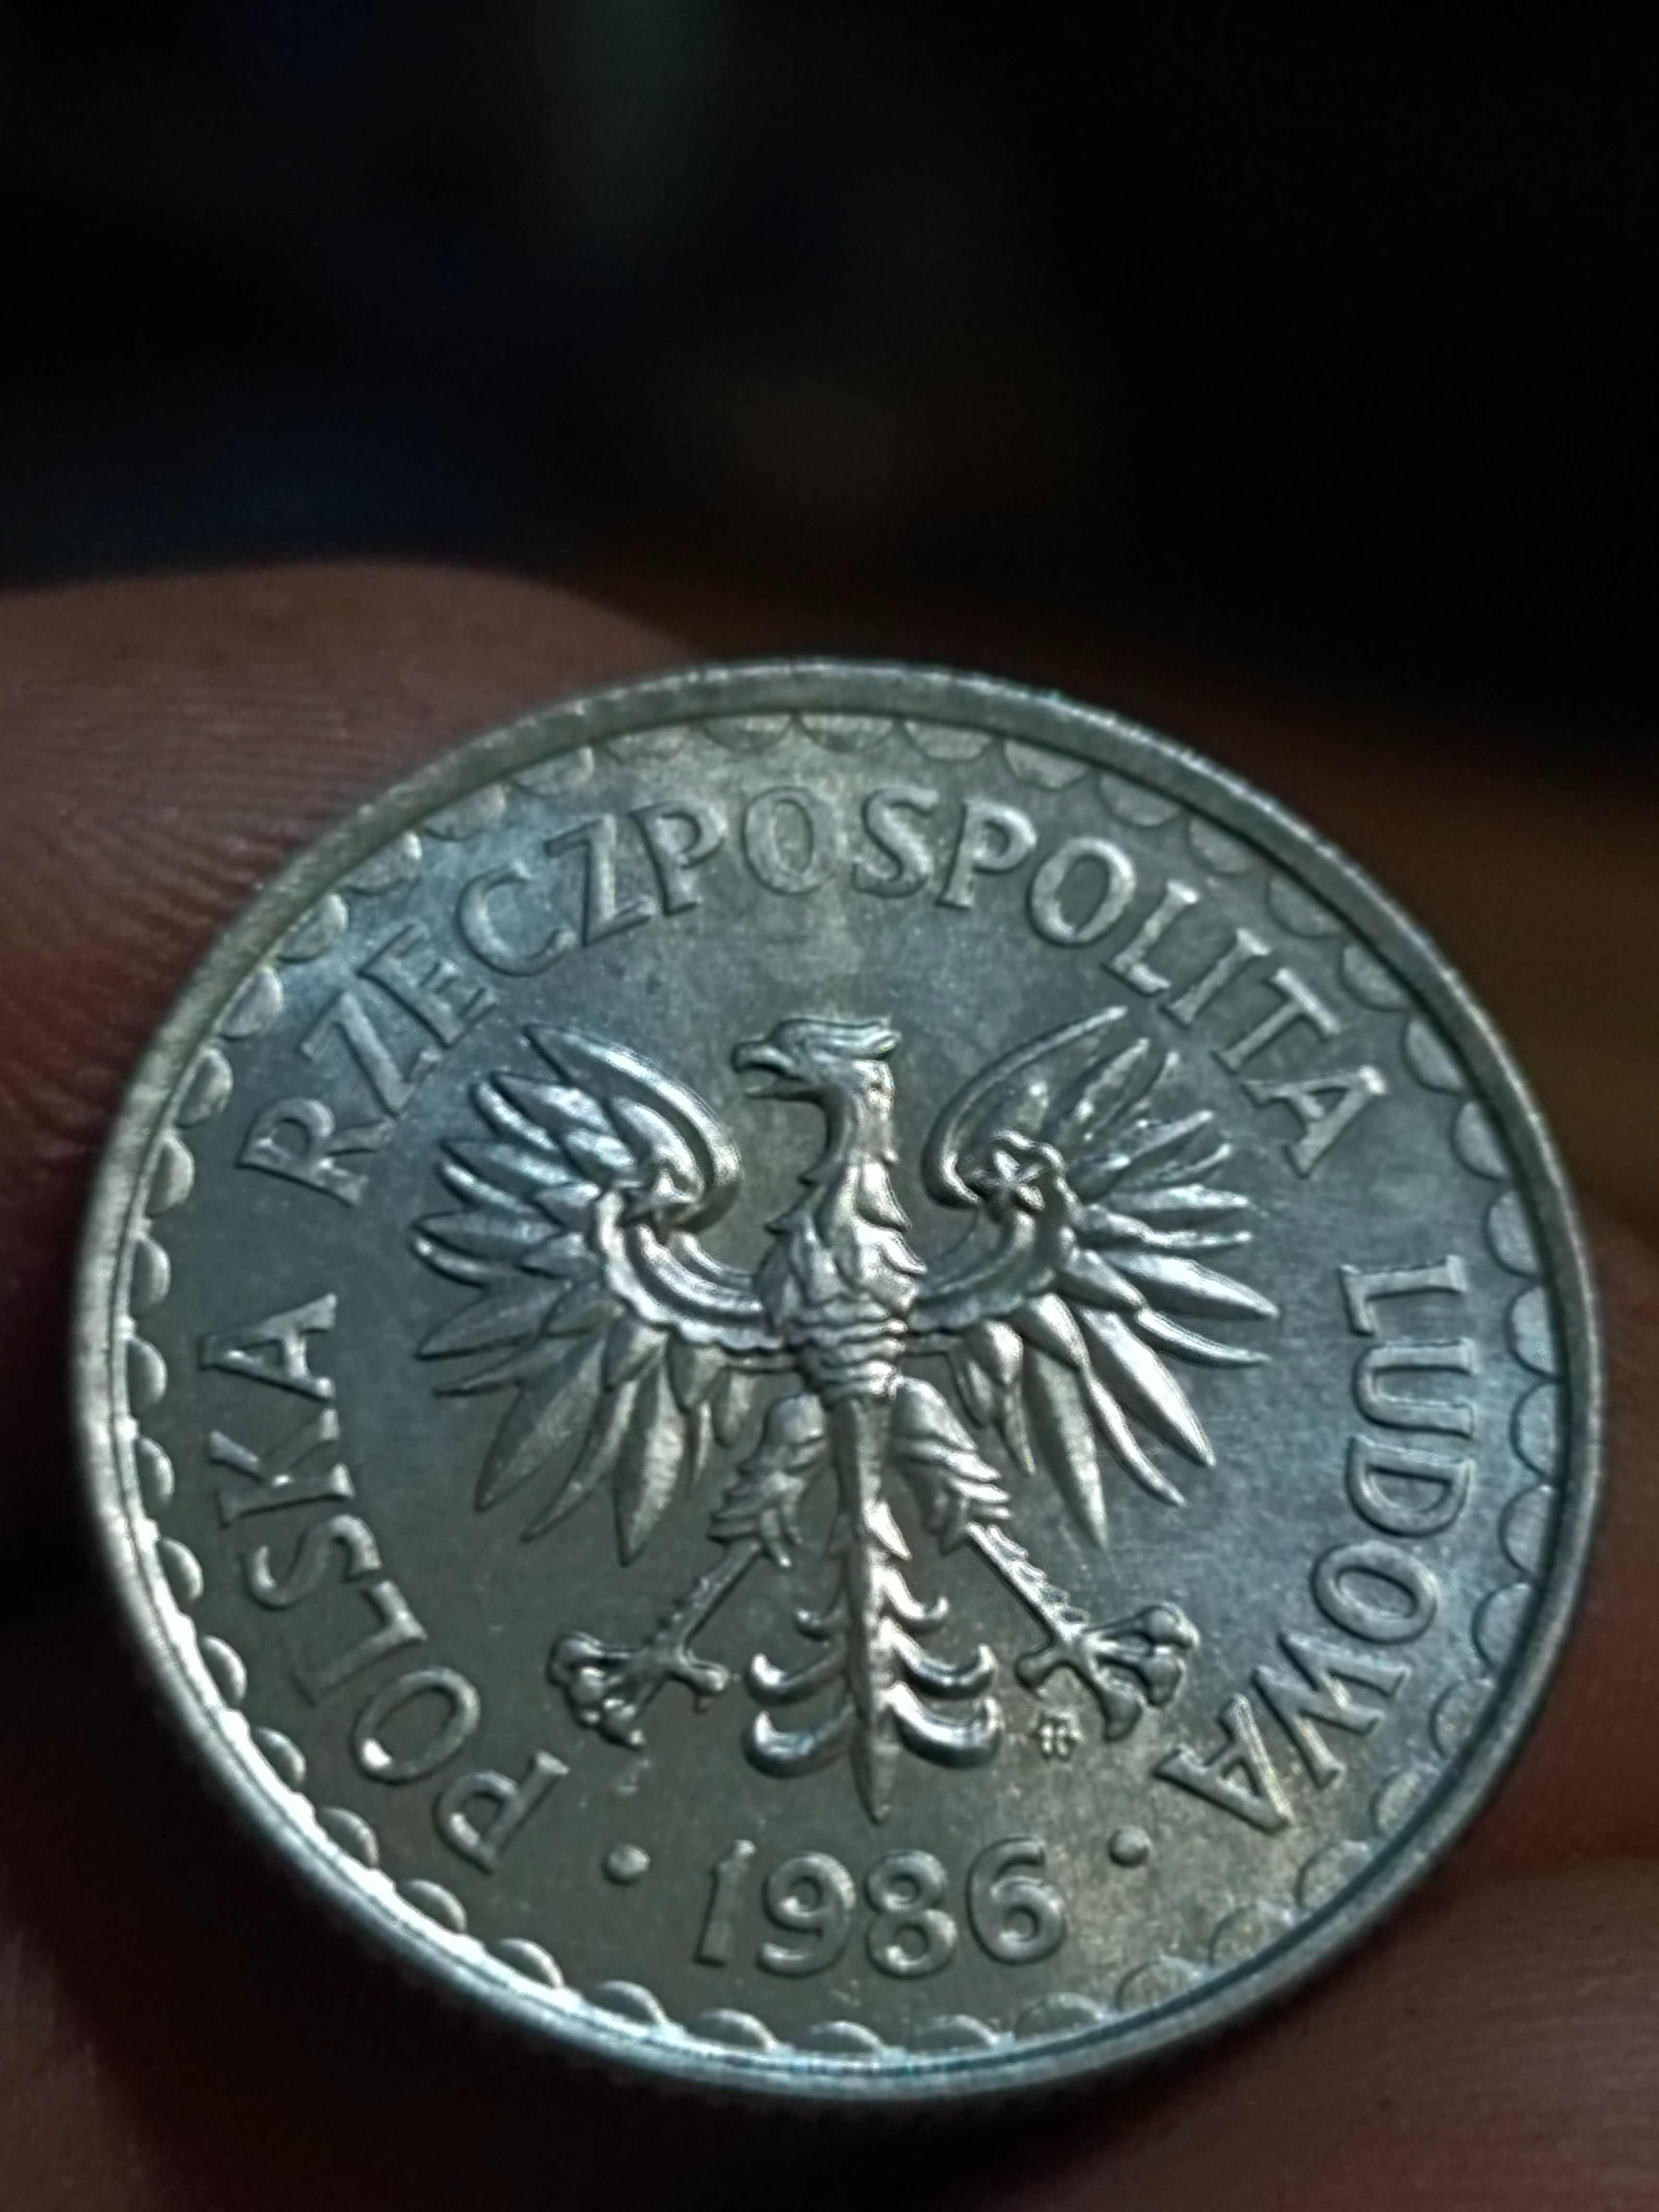 Sprzedam monete 1 zl 1986 rok